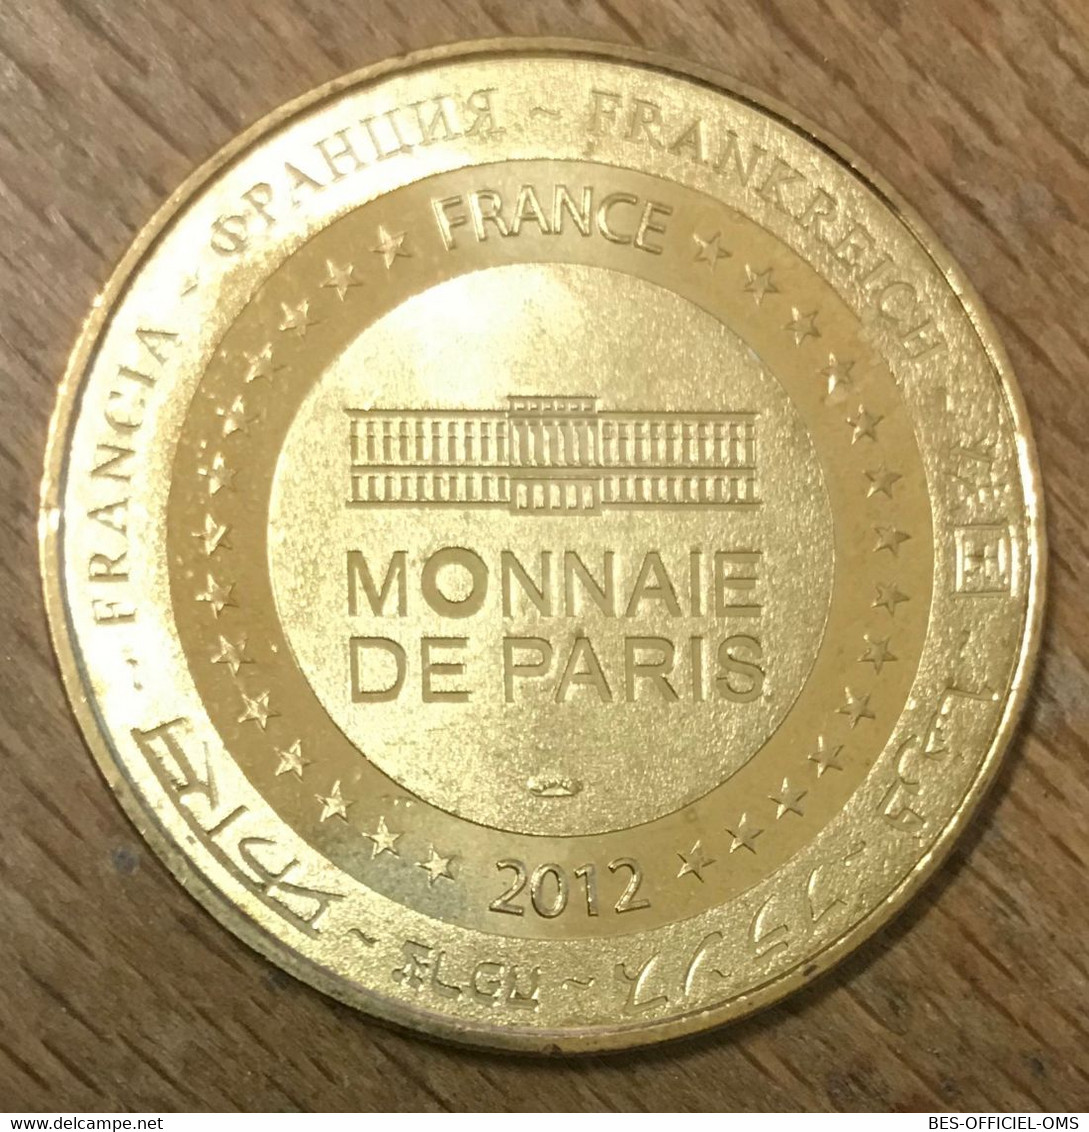 04 MOUSTIER SAINTE-MARIE MDP 2012 MÉDAILLE SOUVENIR MONNAIE DE PARIS JETON TOURISTIQUE MEDALS COINS TOKENS - 2012